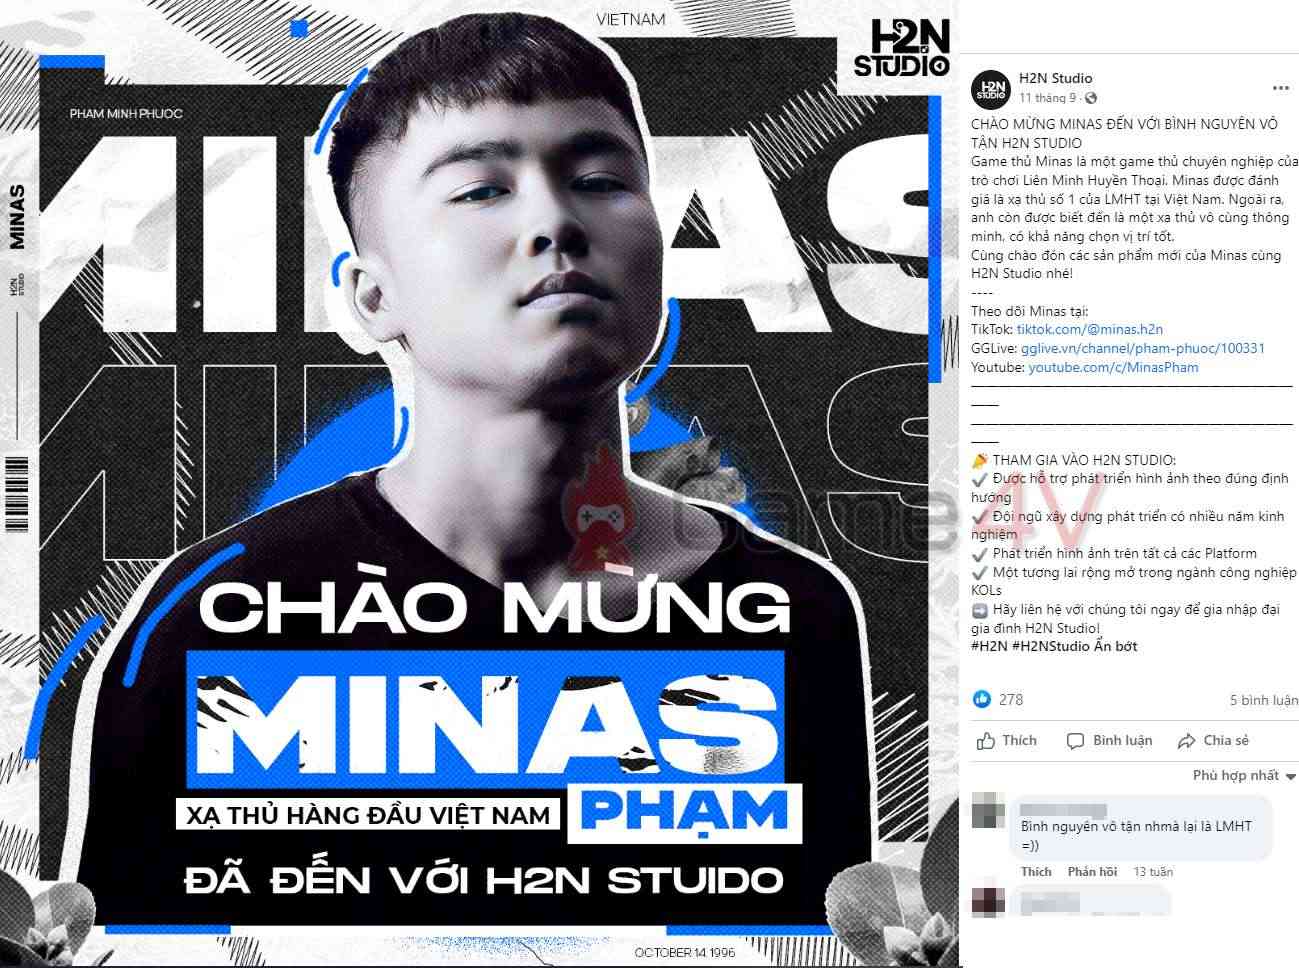 H2N Studio - công ty của Minas đã xác nhận "Phạm Phước" mới là kênh stream chính thức của anh.